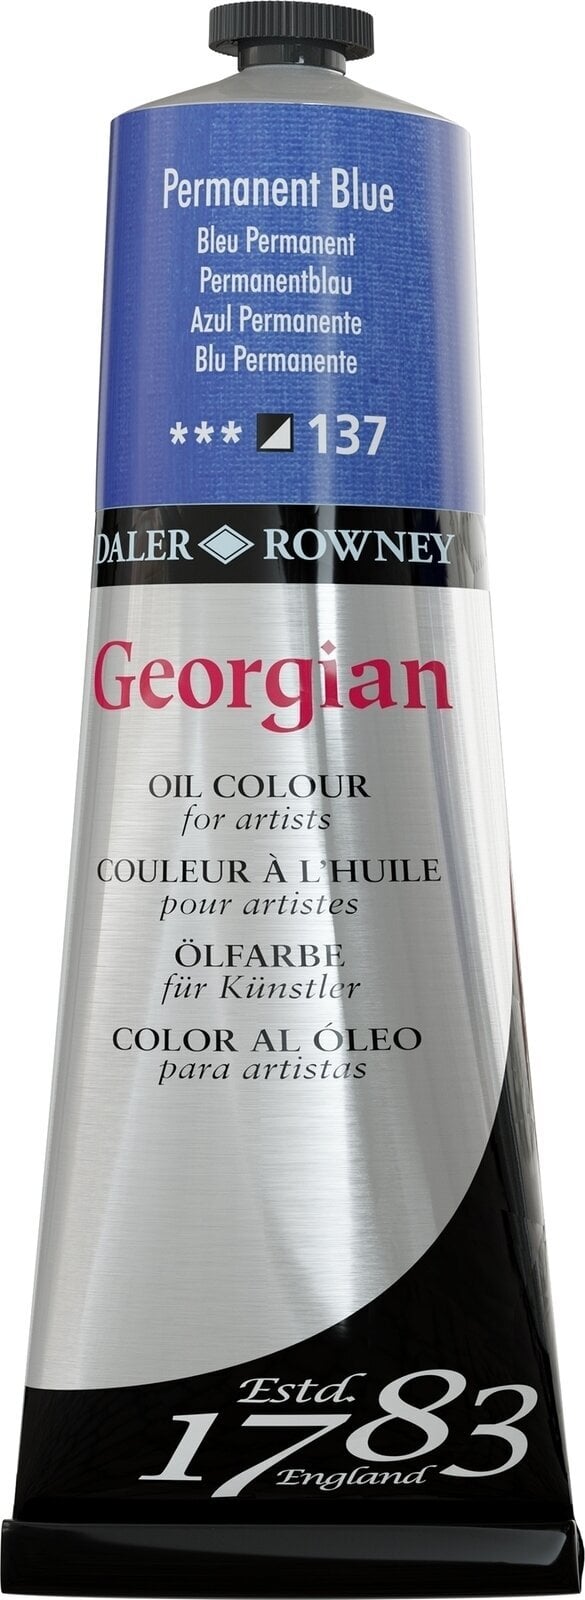 Oil colour Daler Rowney Georgian Oil Paint Permanent Blue 225 ml 1 pc